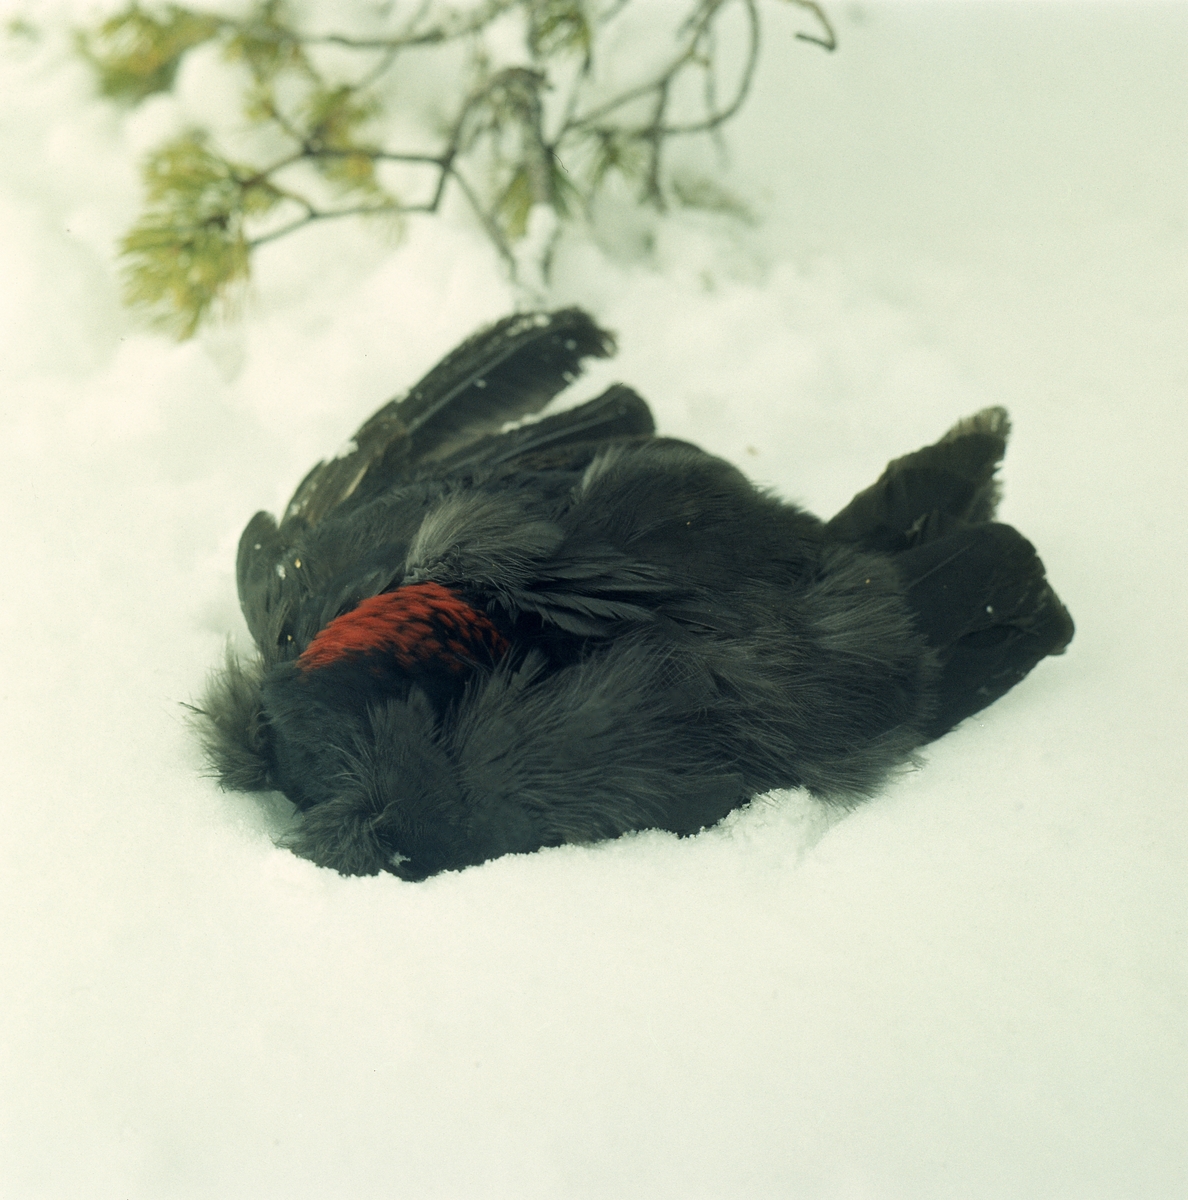 En död spillkråka ligger i snön, med en tallkvist i bakgrunden.